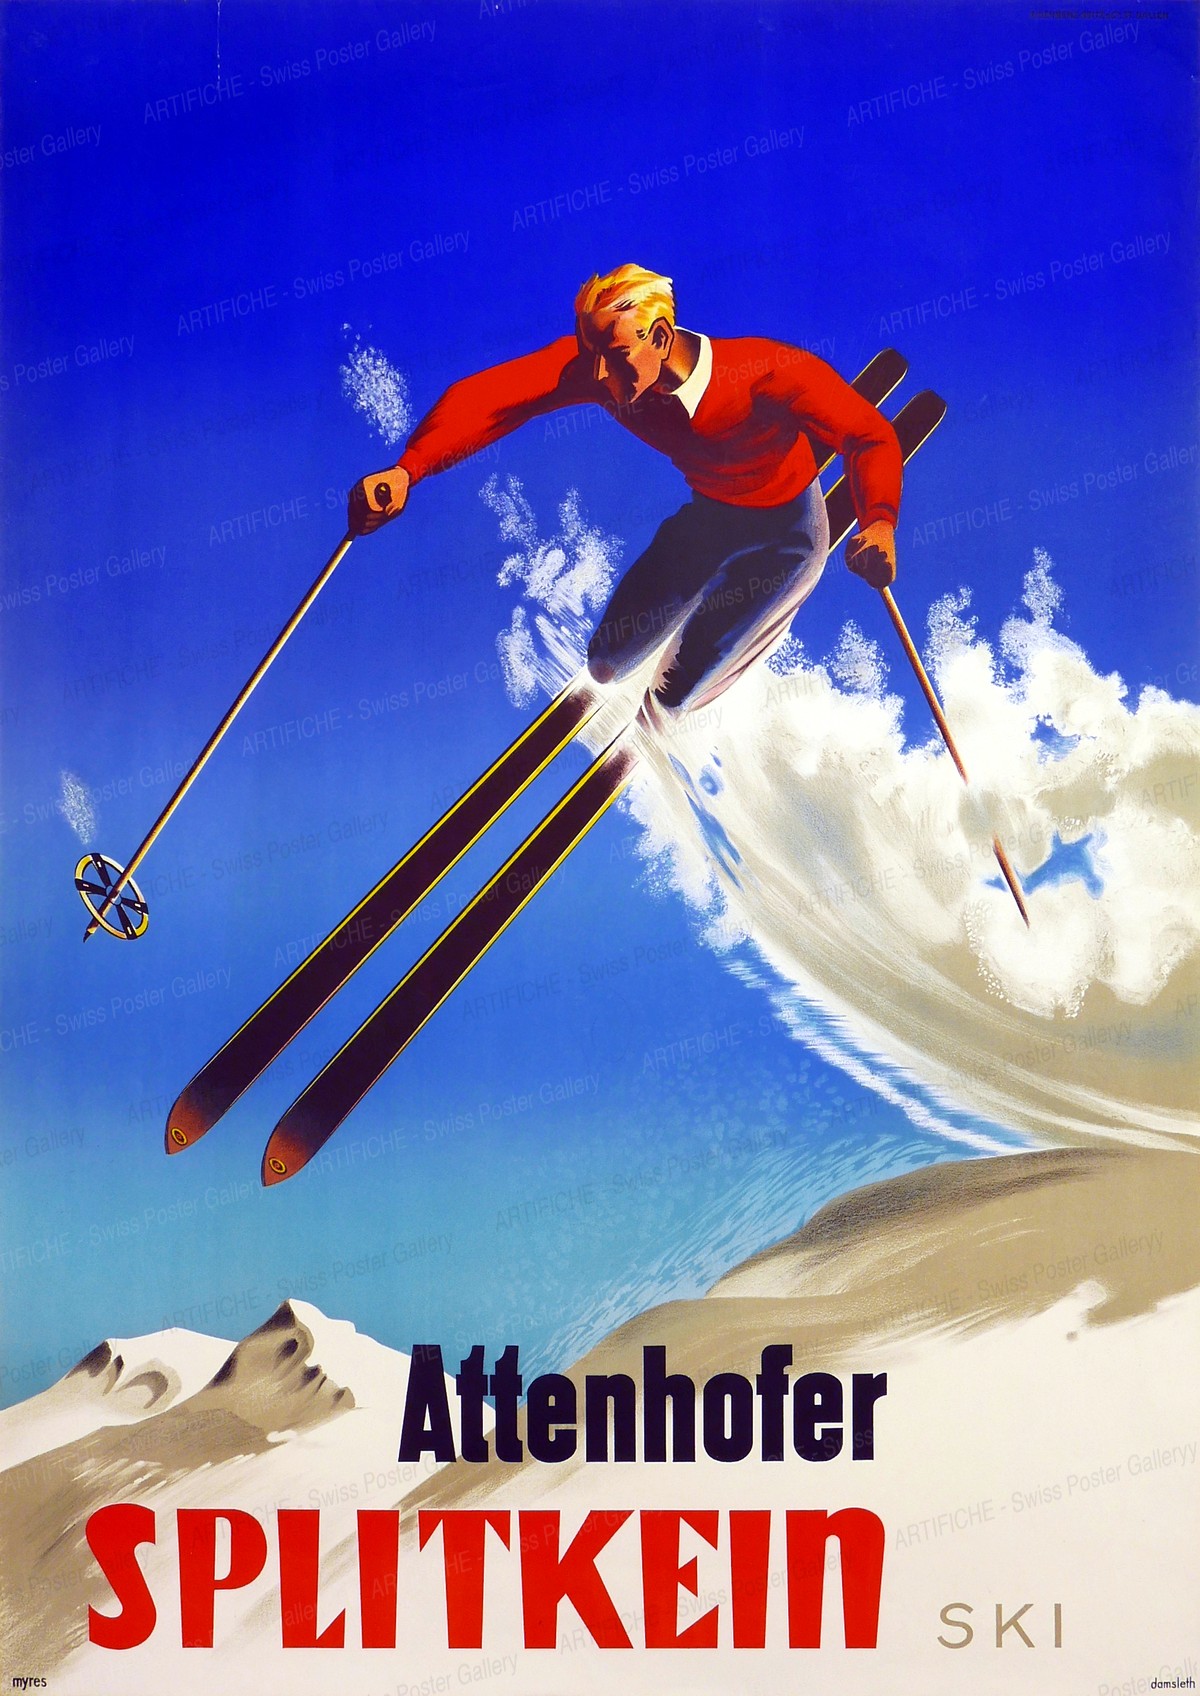 Attenhofer Splitkein Ski, Harald Damsleth